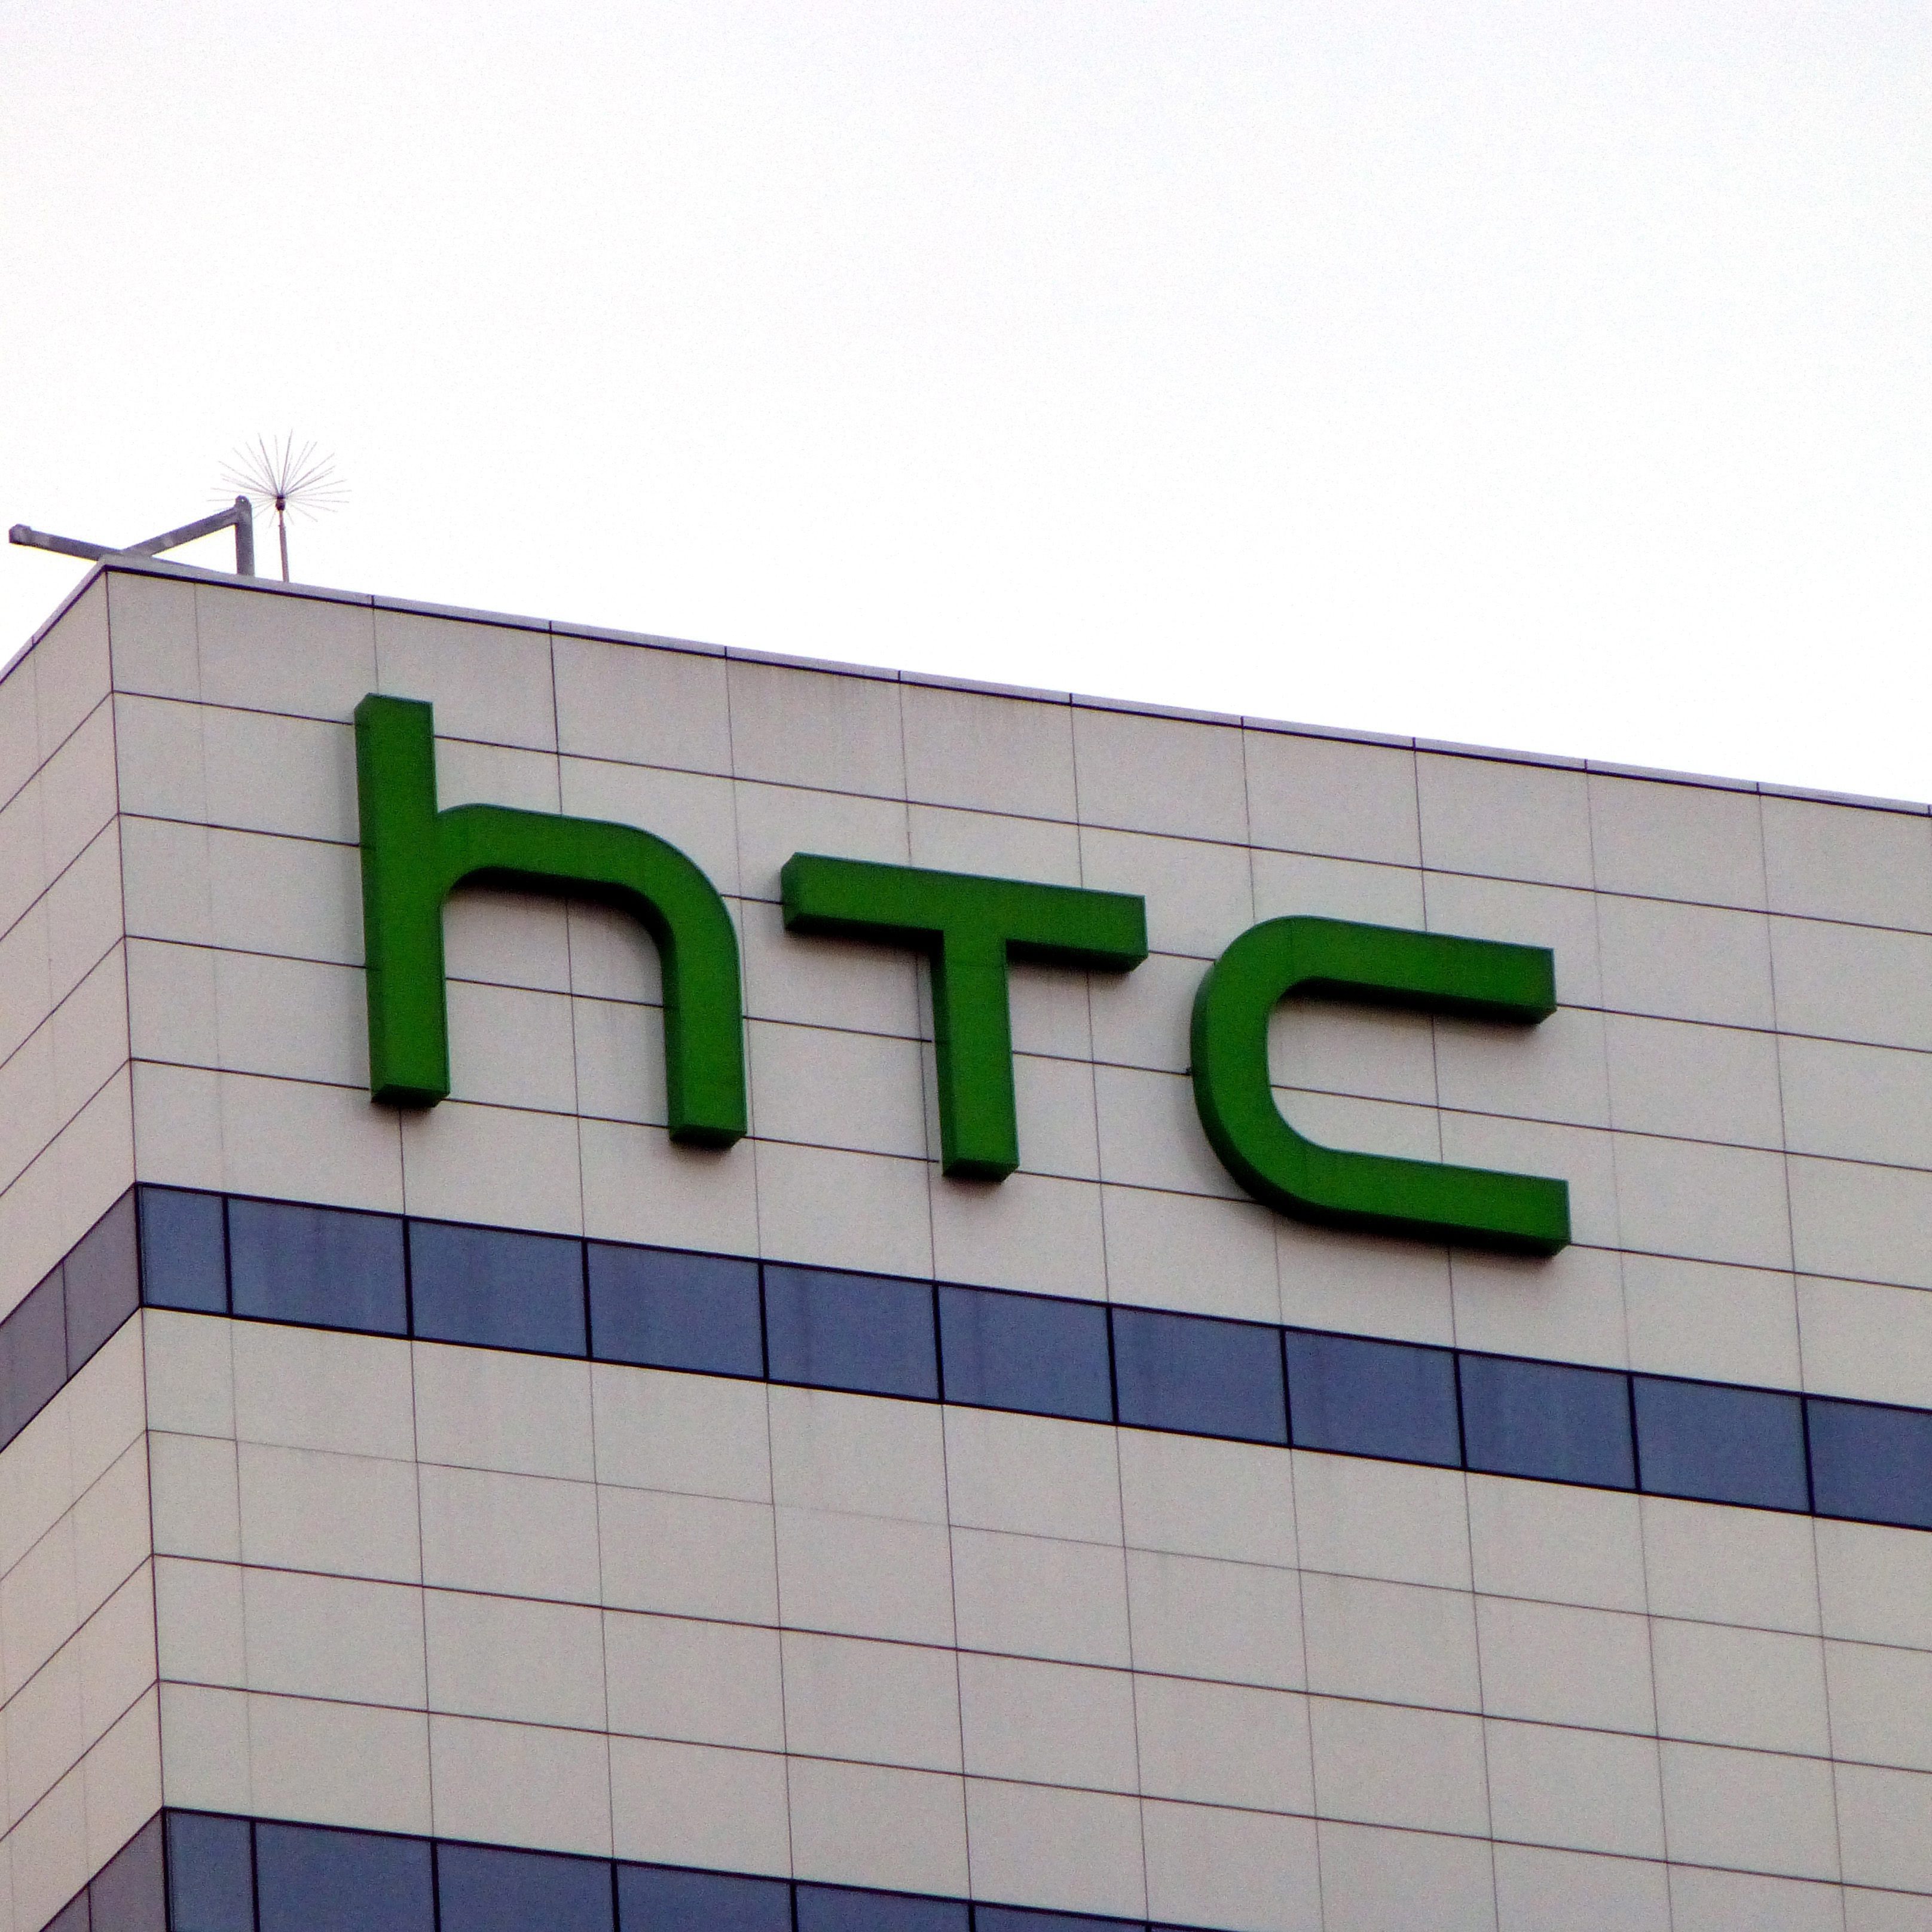 De Taiwanese smartphonefabrikant HTC verwacht in het eerste kwartaal van dit jaar de laagste omzet sinds 2009 te boeken. Dat maakte het bedrijf maandag bekend. HTC verwacht dat de omzet dit kwartaal uitkomt tussen 34 en 36 miljard Taiwanese dollar (823 tot 871 miljoen euro). Vorig kwartaal bedroegen de opbrengsten nog bijna 43 miljard dollar, een kwartaal daarvoor was de omzet 49 miljard dollar. HTC wordt hard geraakt door de felle concurrentiestrijd met Apple en Samsung. De omzet van het bedrijf gaat al jaren op rij omlaag. Het marktaandeel van HTC op de wereldwijde smartphonemarkt brokkelt daardoor steeds verder af.